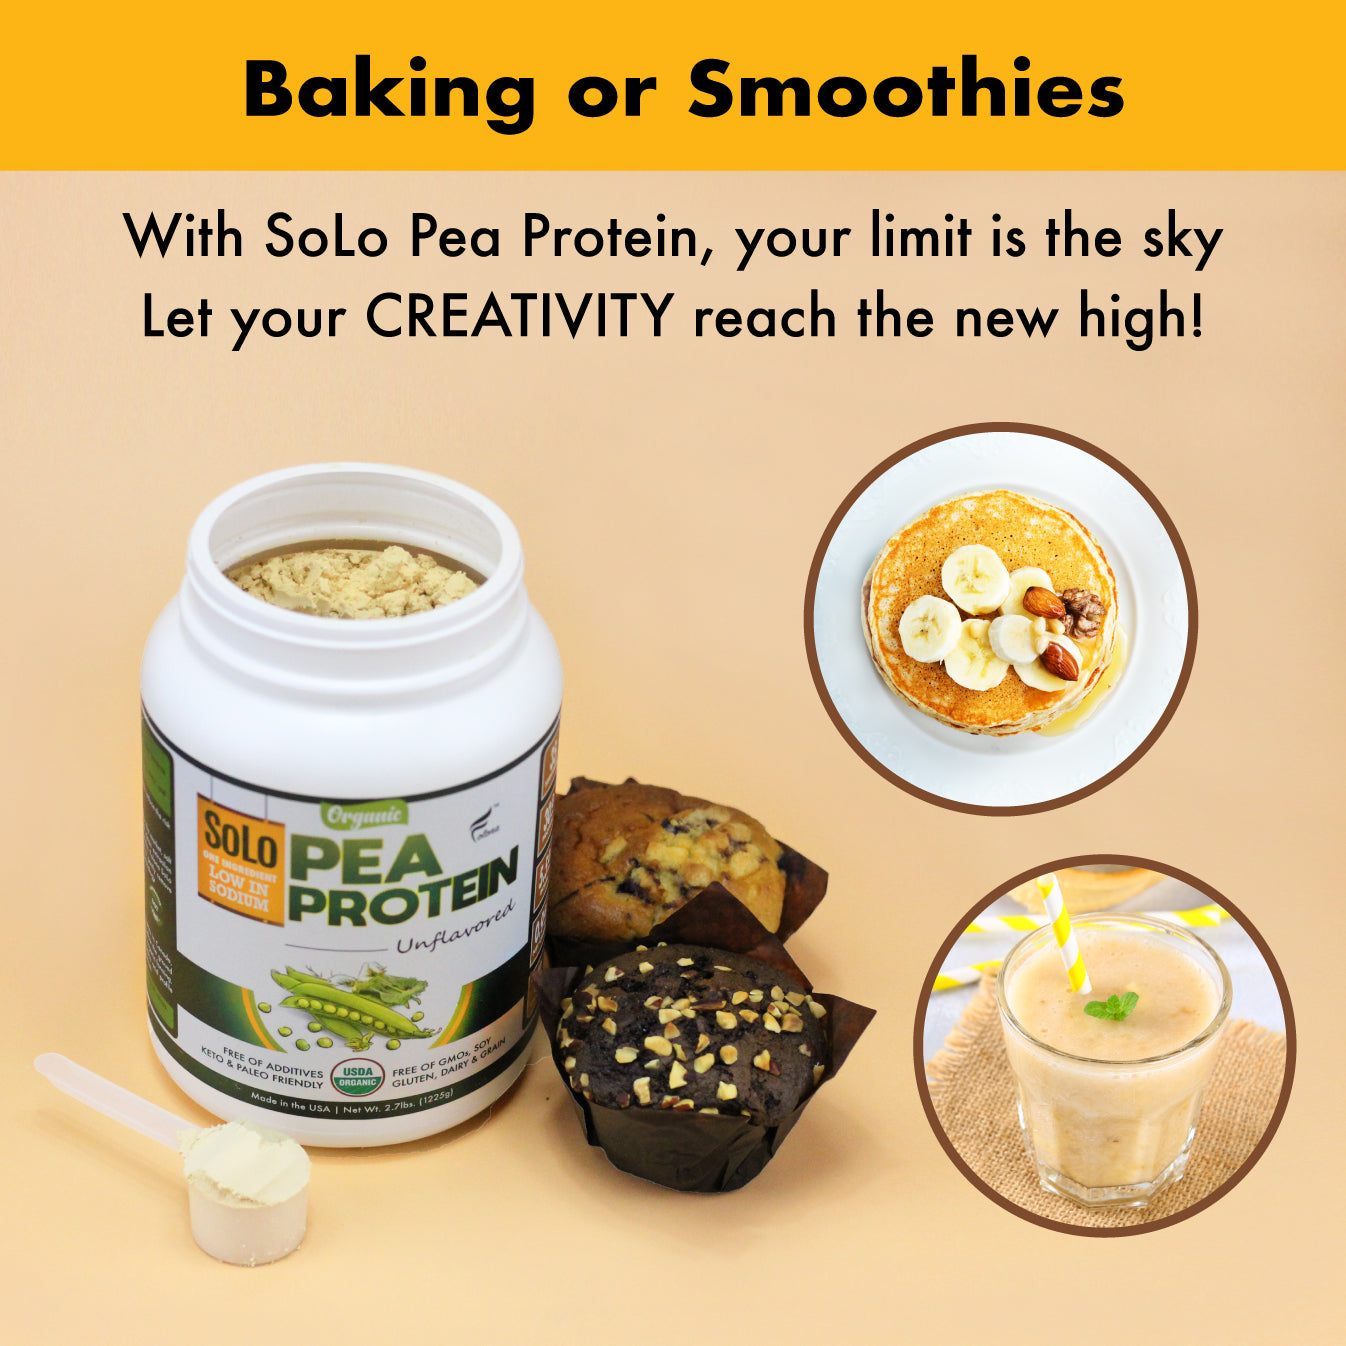 Organic SoLo Pea Protein Powder